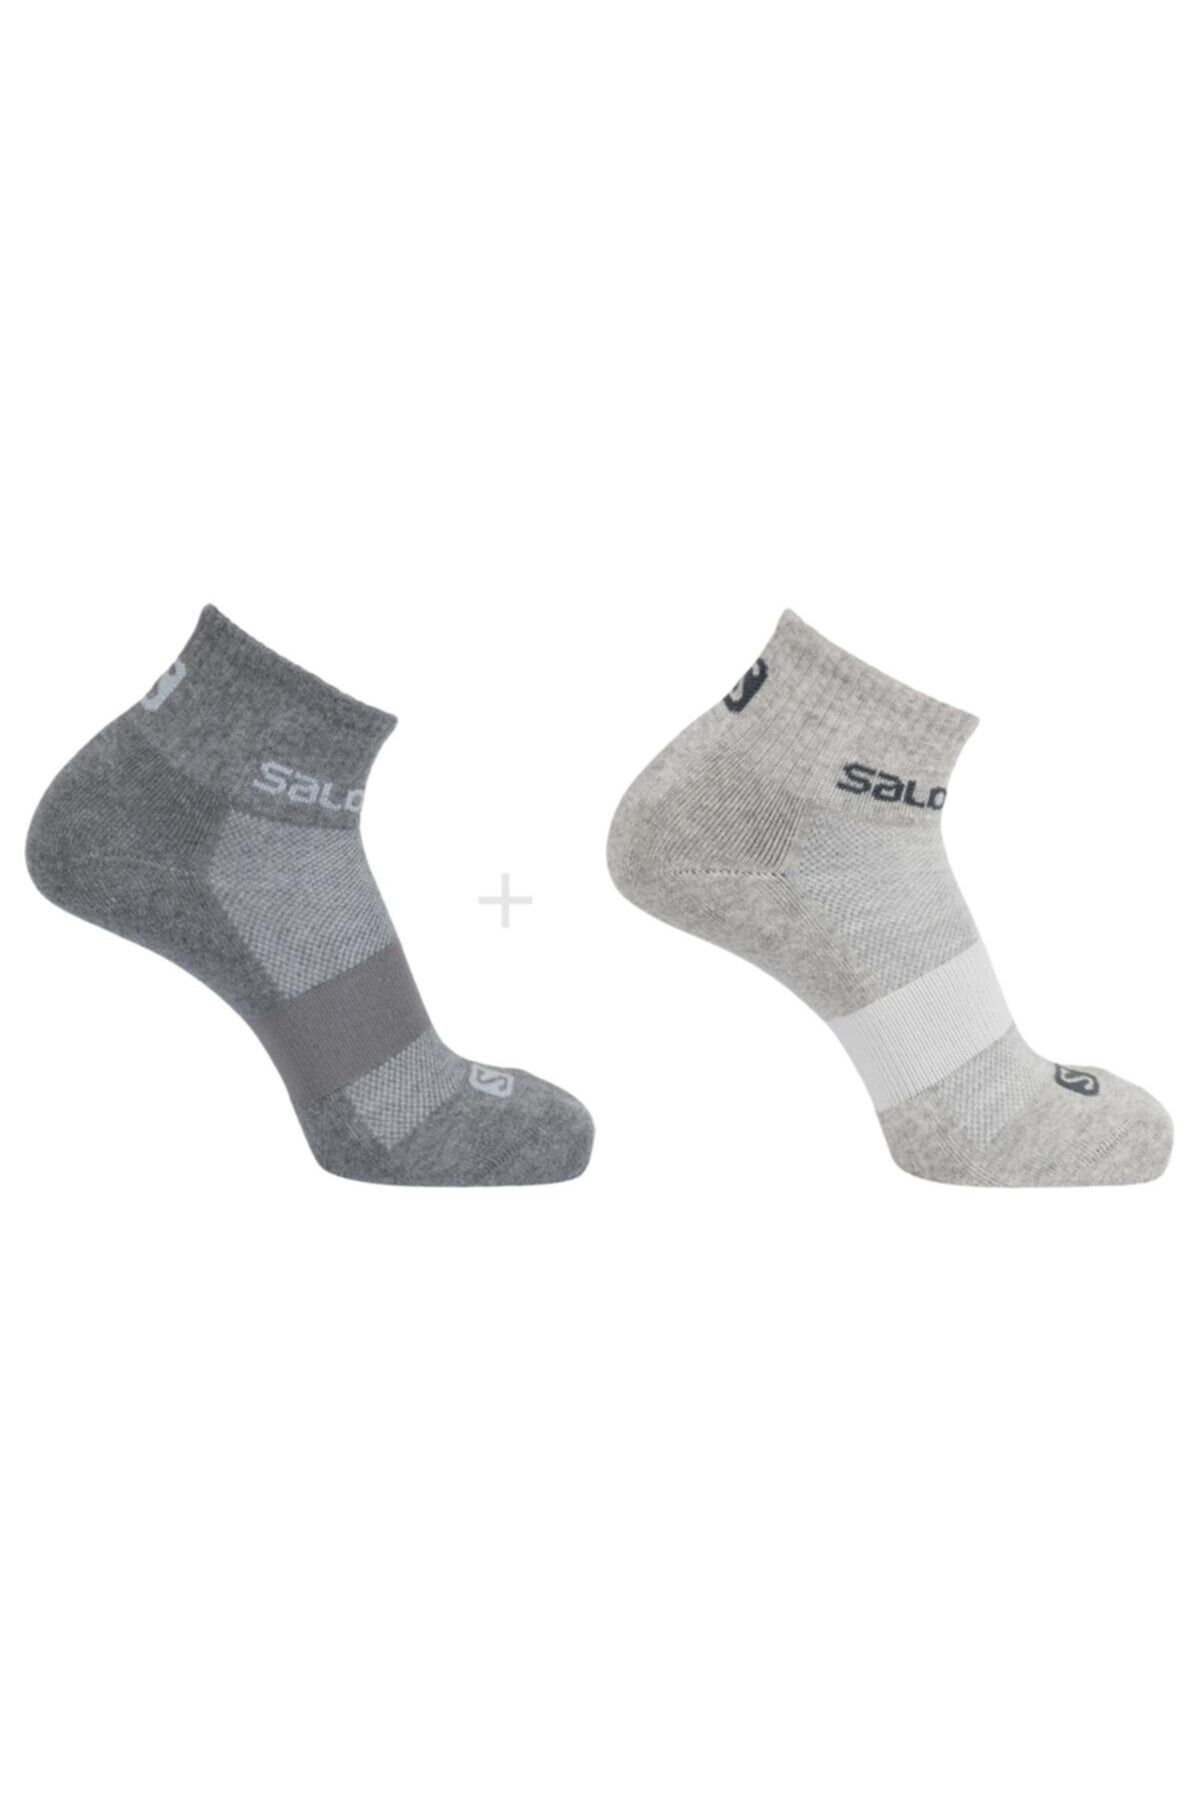 Salomon Evasıon 2-pack Spor Çorap